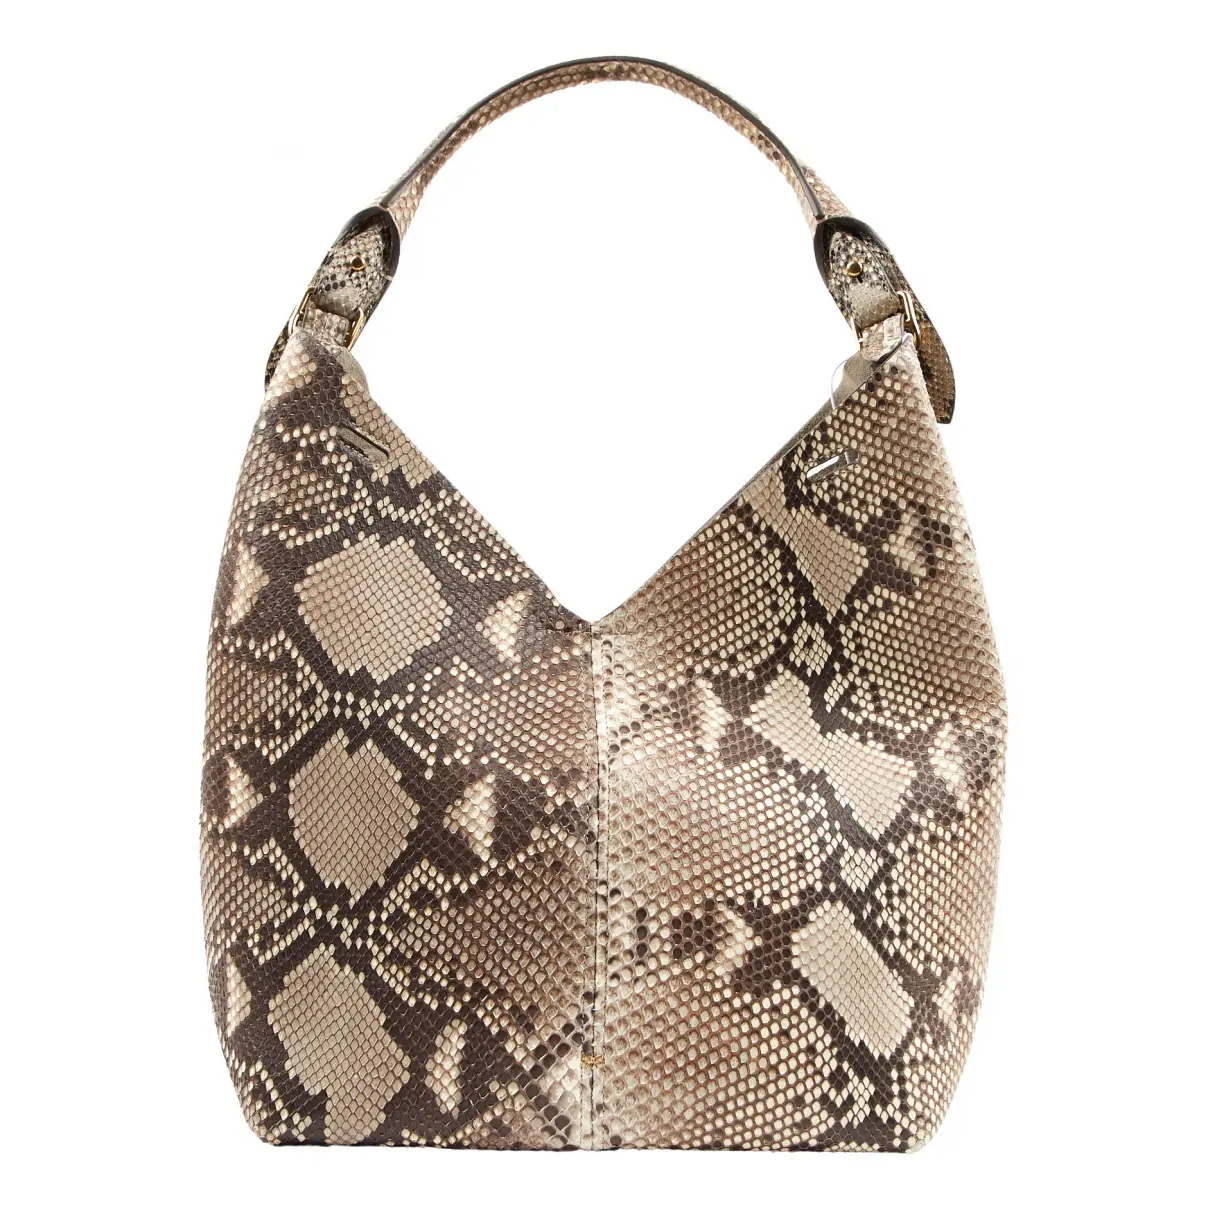 Python handbag Anya Hindmarch